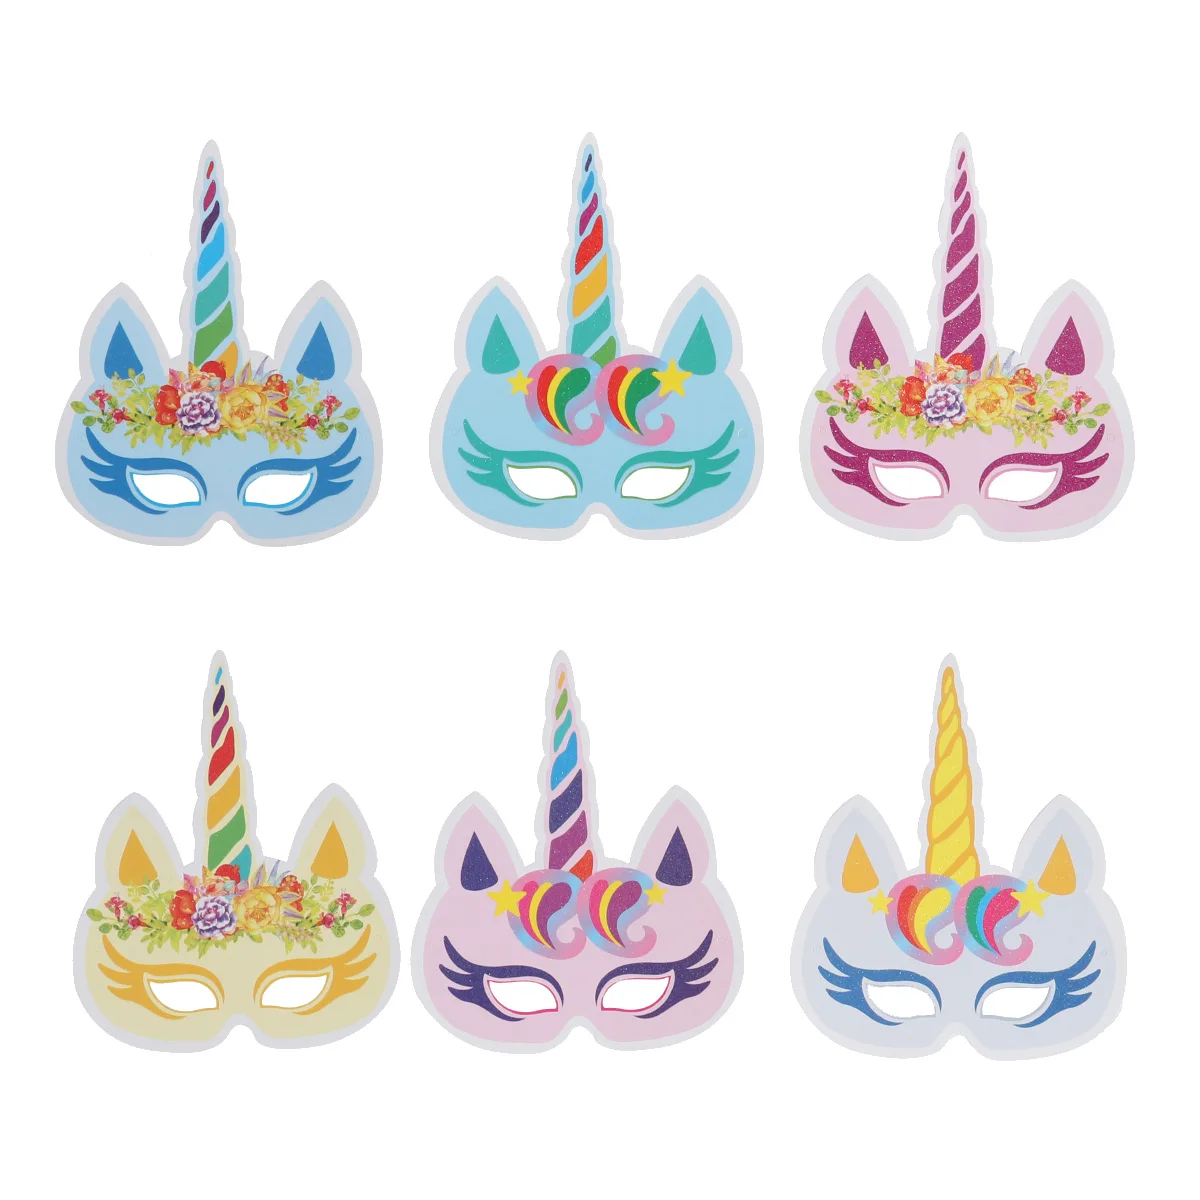 6 шт День рождения красочный единорог маски предметы для вечеринок украшения для детей и взрослых(6 стилей